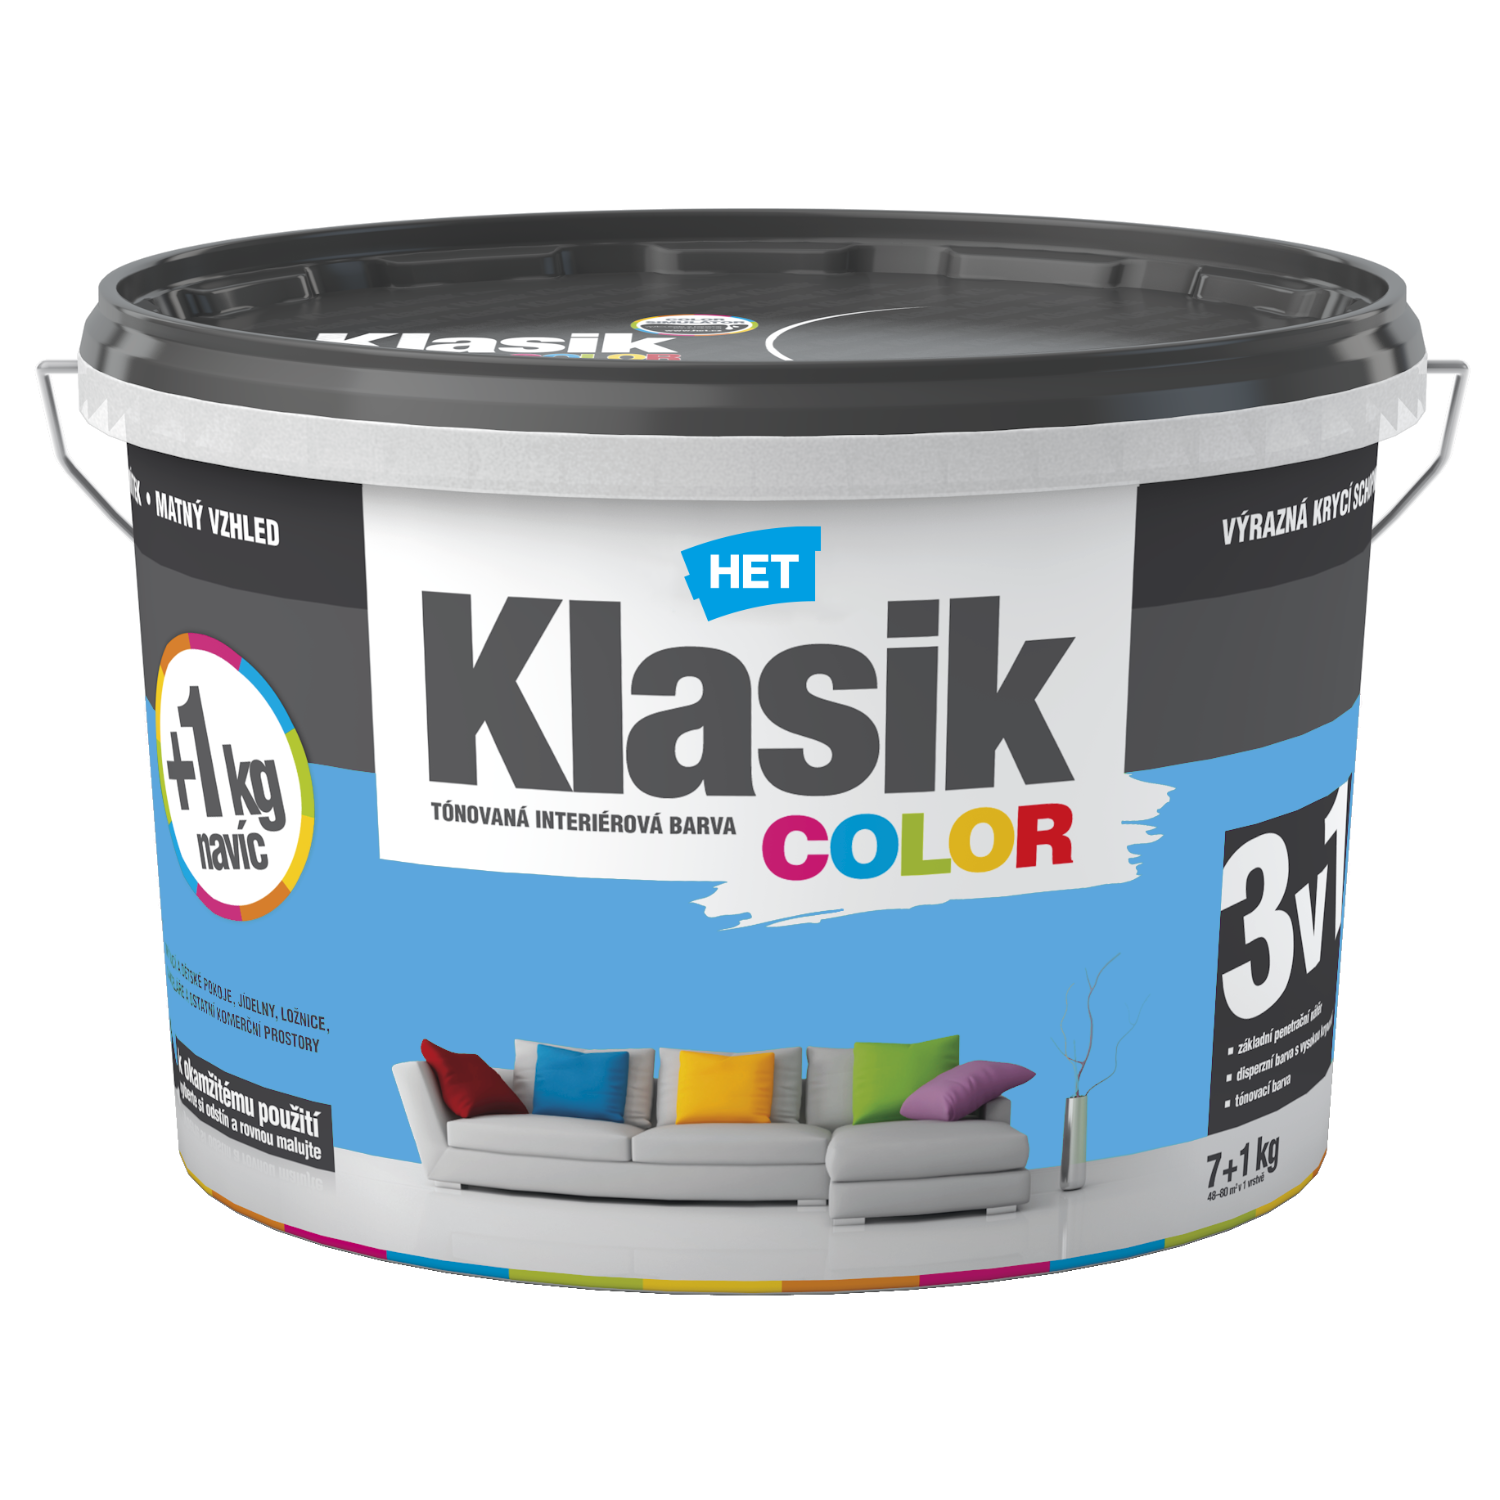 HET Klasik COLOR tónovaná interiérová akrylátová disperzná oteruvzdorná farba 7 kg + 1 kg zdarma, KC0407 - modrý blankytný